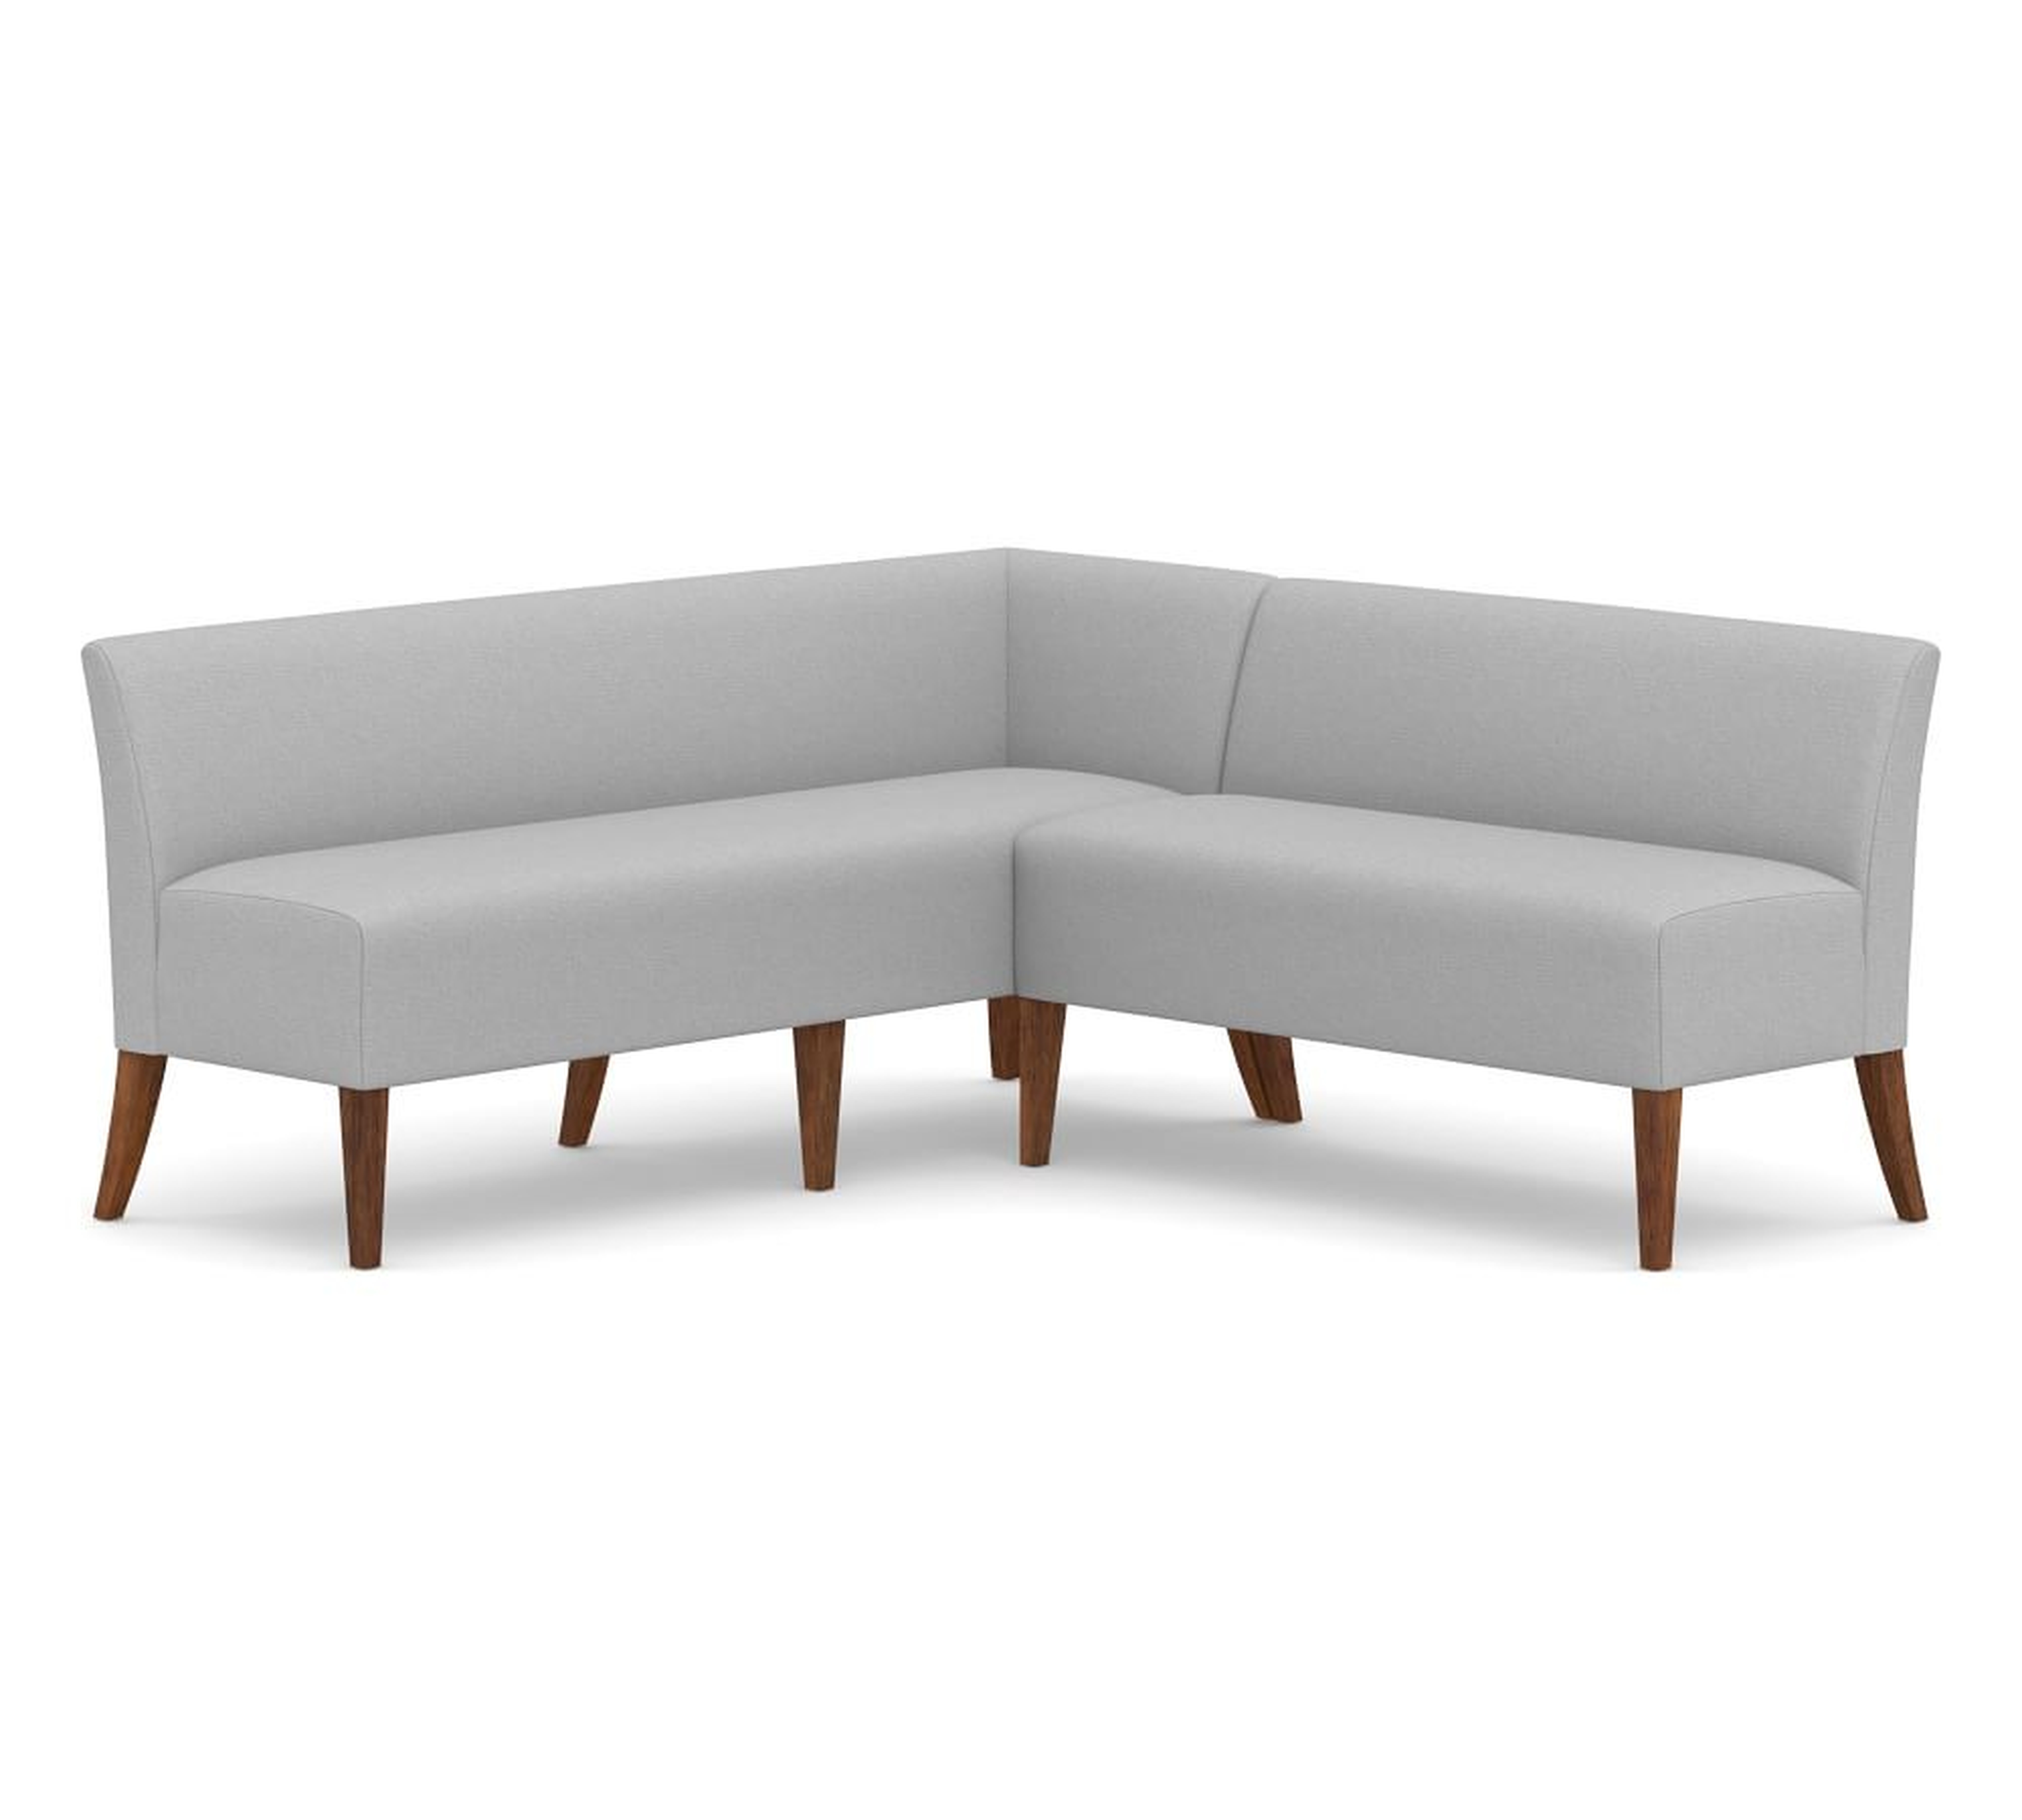 Modular Upholstered Banquette Set, Seadrift Leg, Performance Everydayvelvet(TM) Carbon - Pottery Barn